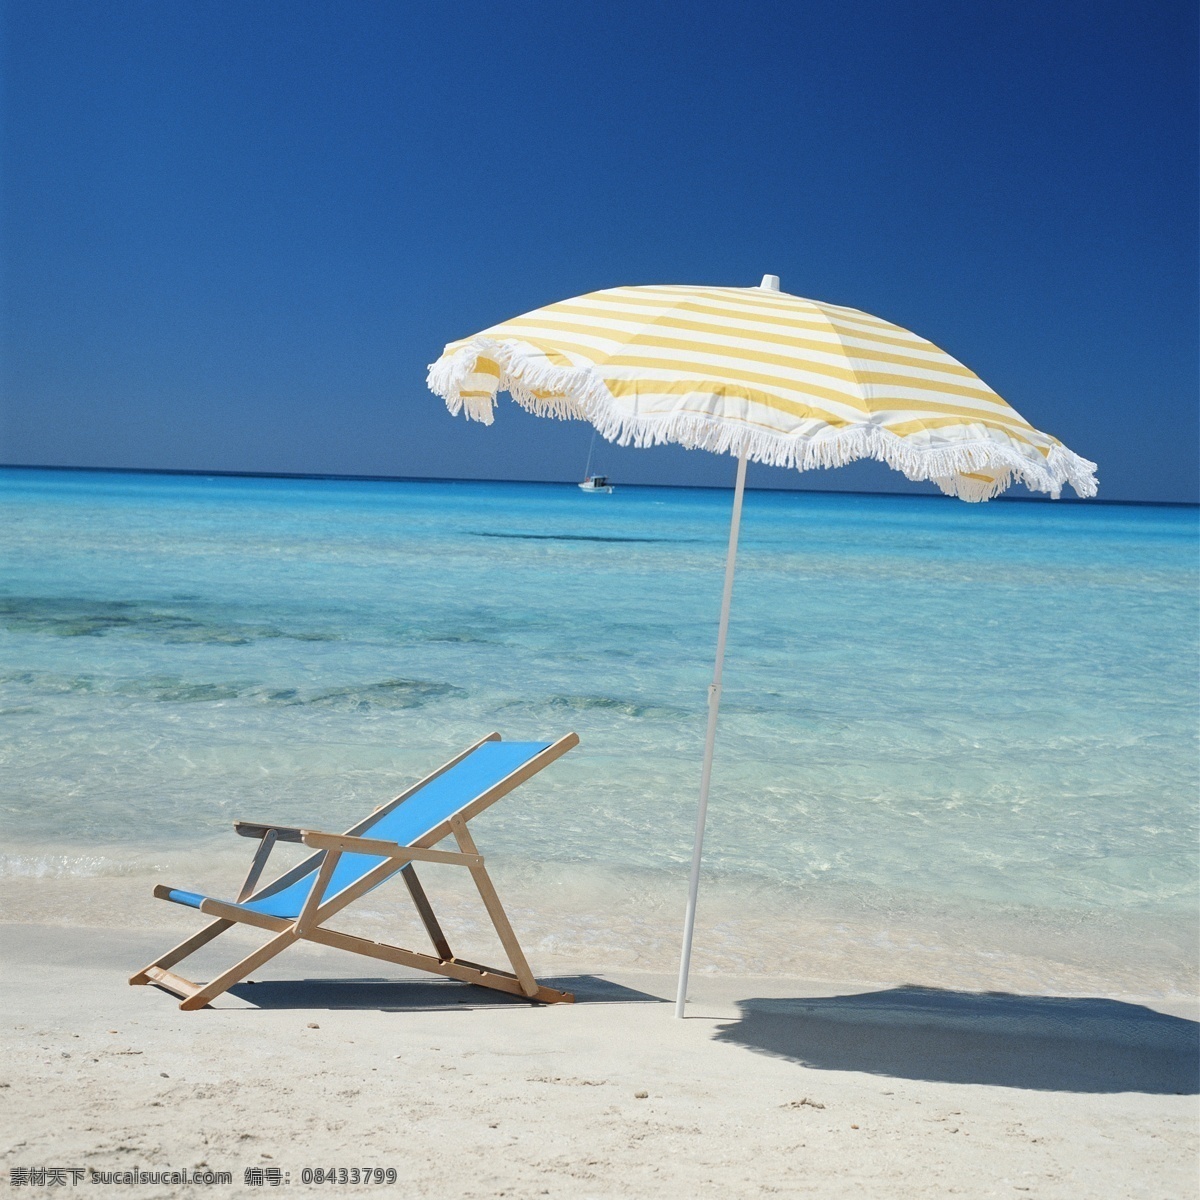 沙滩 凉 椅 遮阳伞 海滩 凉椅 夏日 蓝色大海 海景 海边 大海图片 风景图片